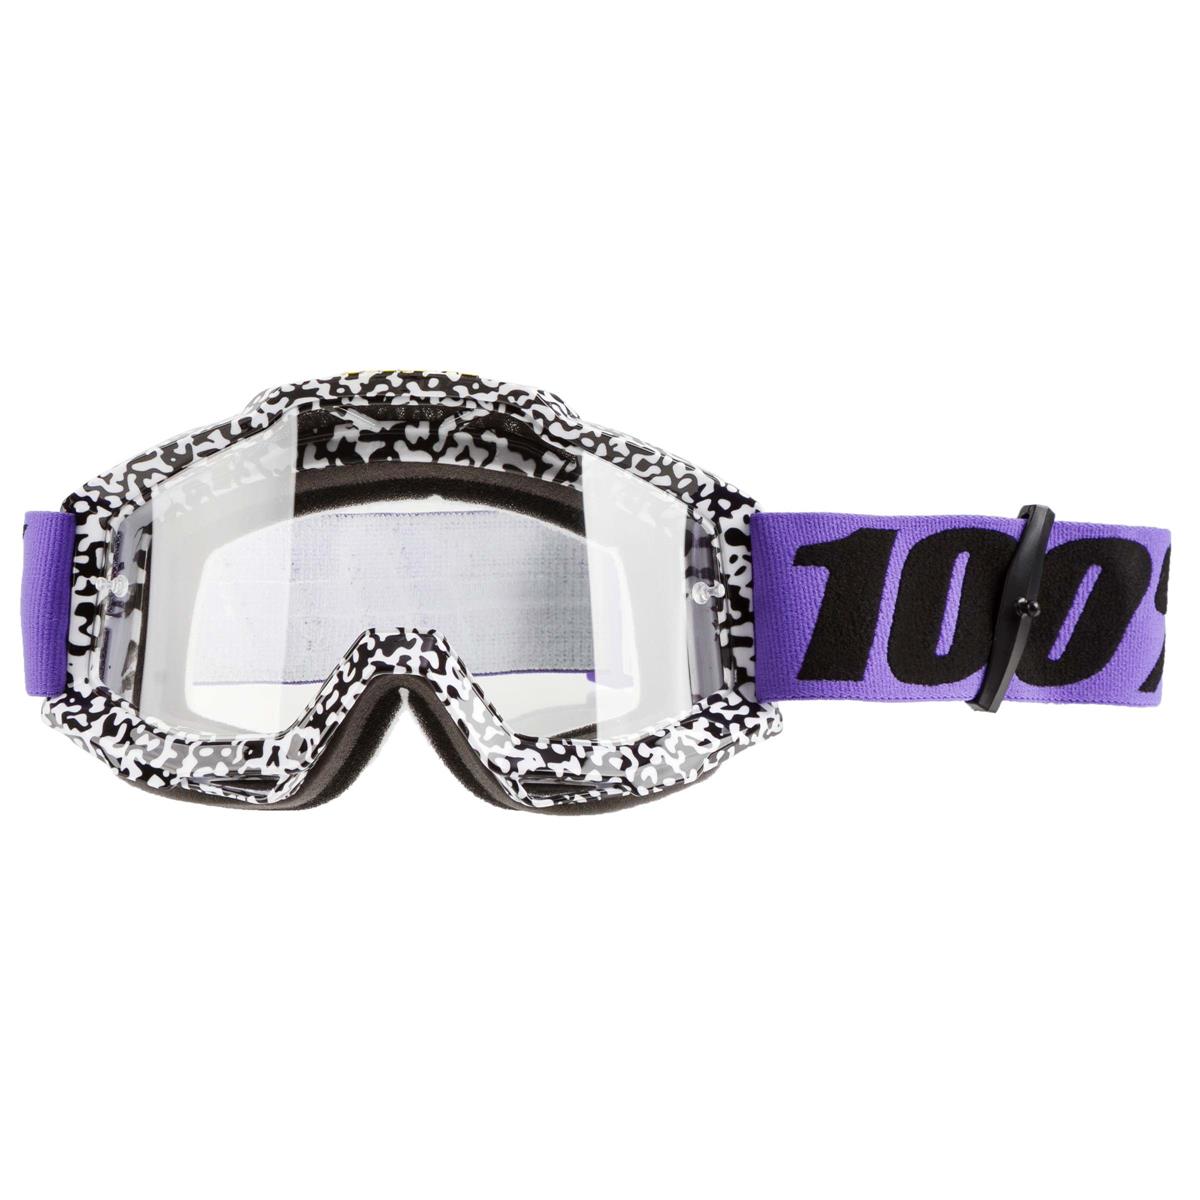 100% Masque Accuri Brentwood - Transparent Anti-Fog